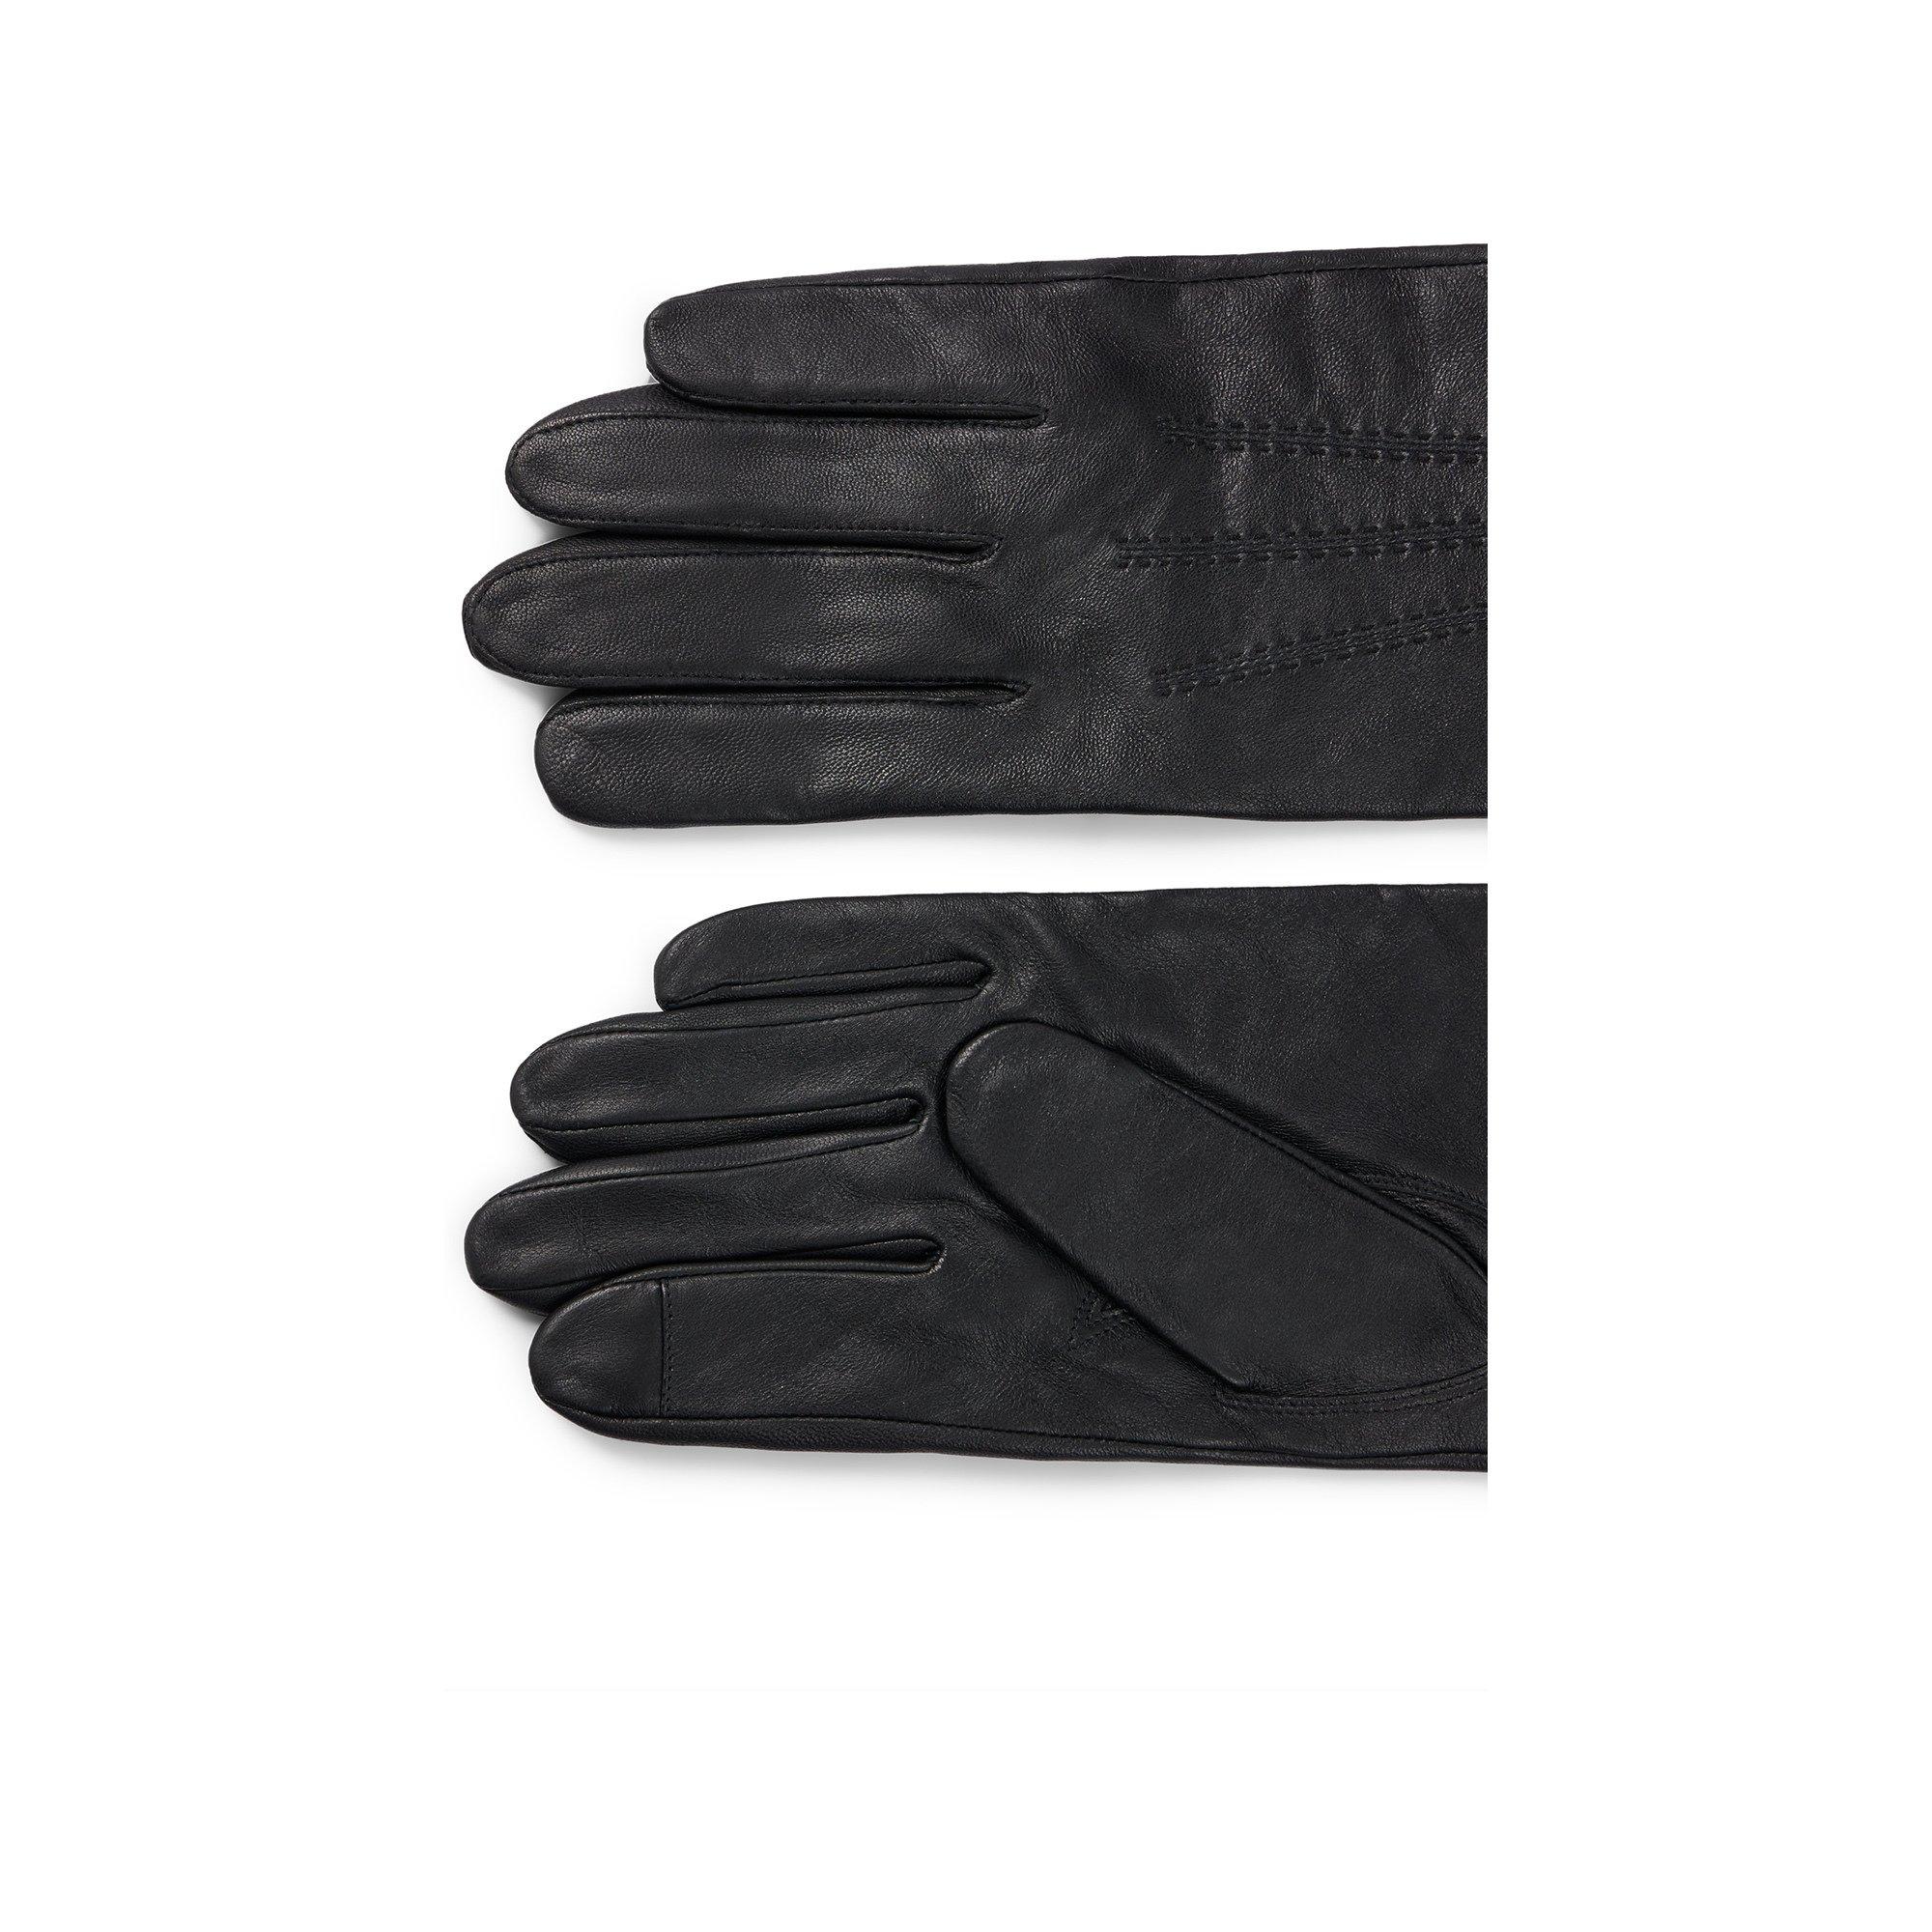 BOSS Hainz Lederhandschuhe Handschuhe 